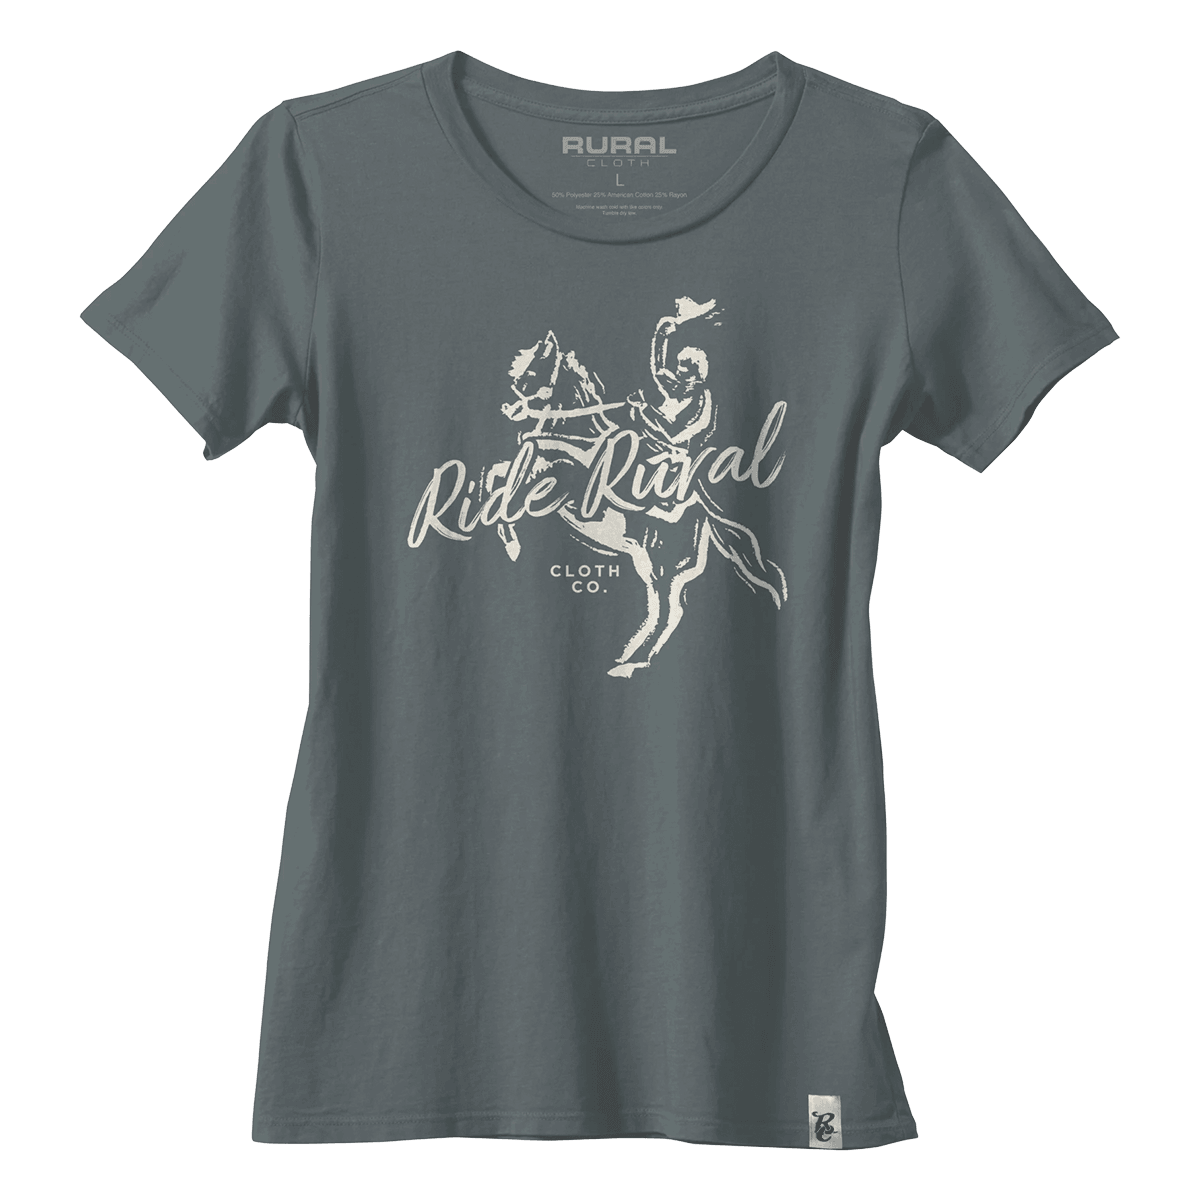 Rural Cloth Shirts Ride Rural - Women's T